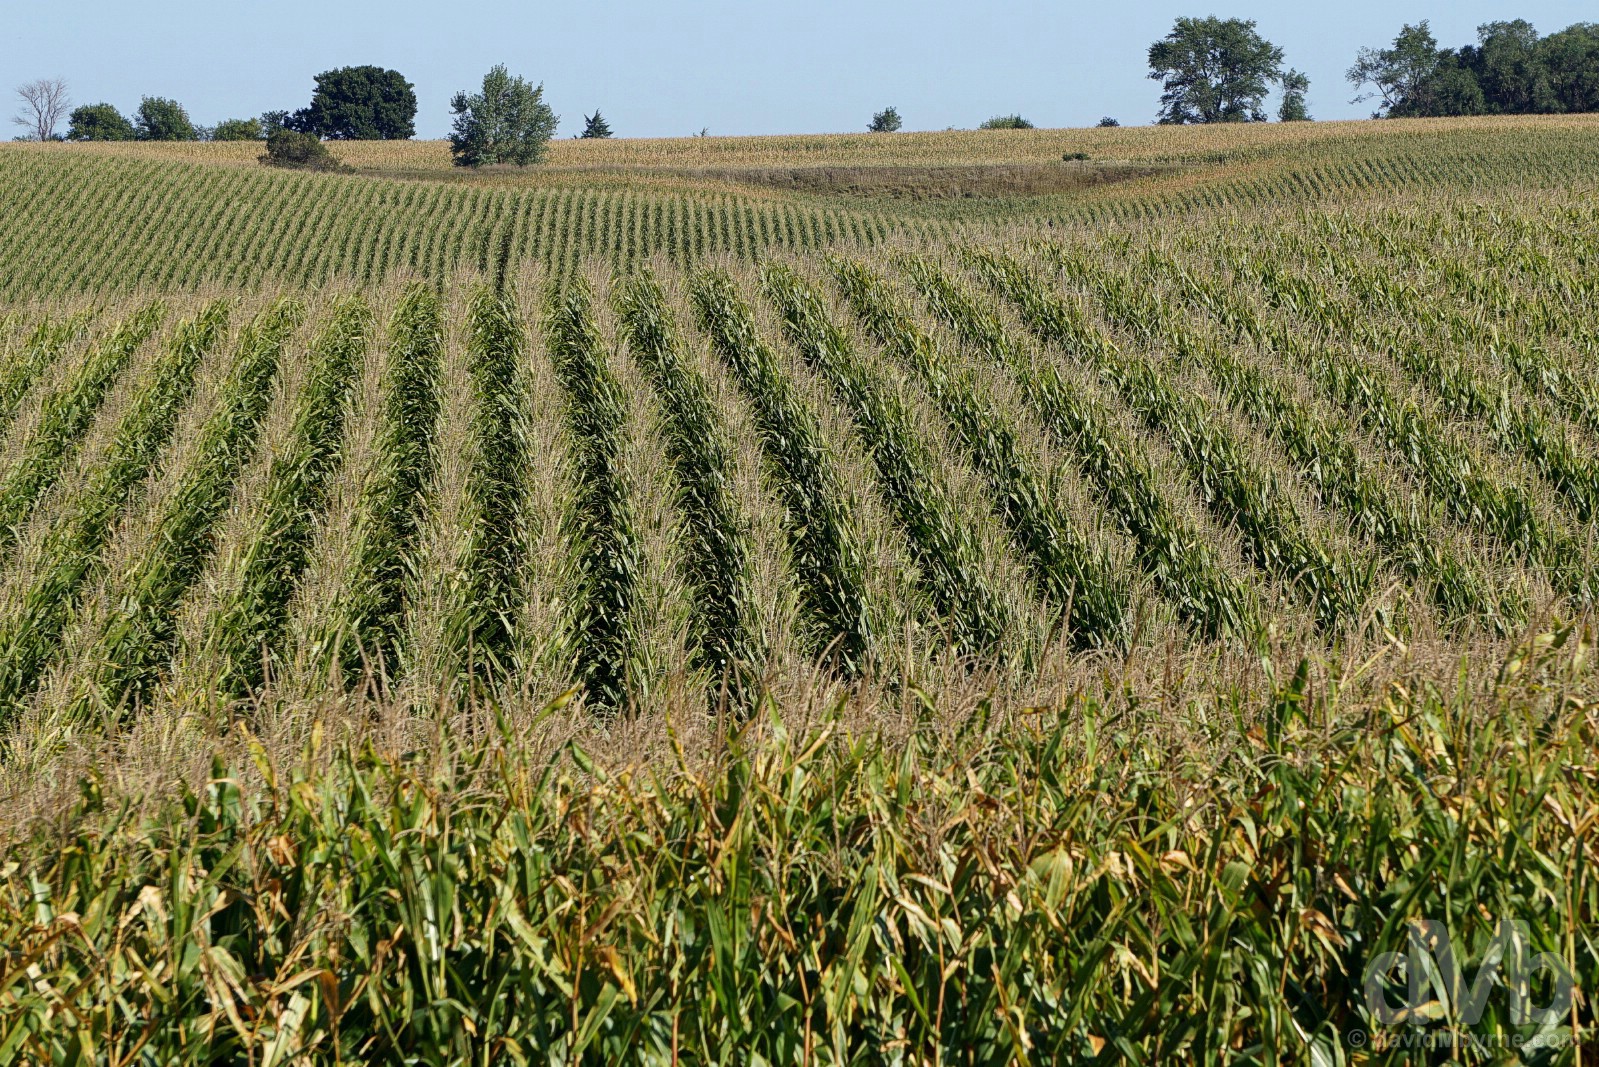 Corn fields outside Spalding, Nebraska, USA. September 16, 2016.